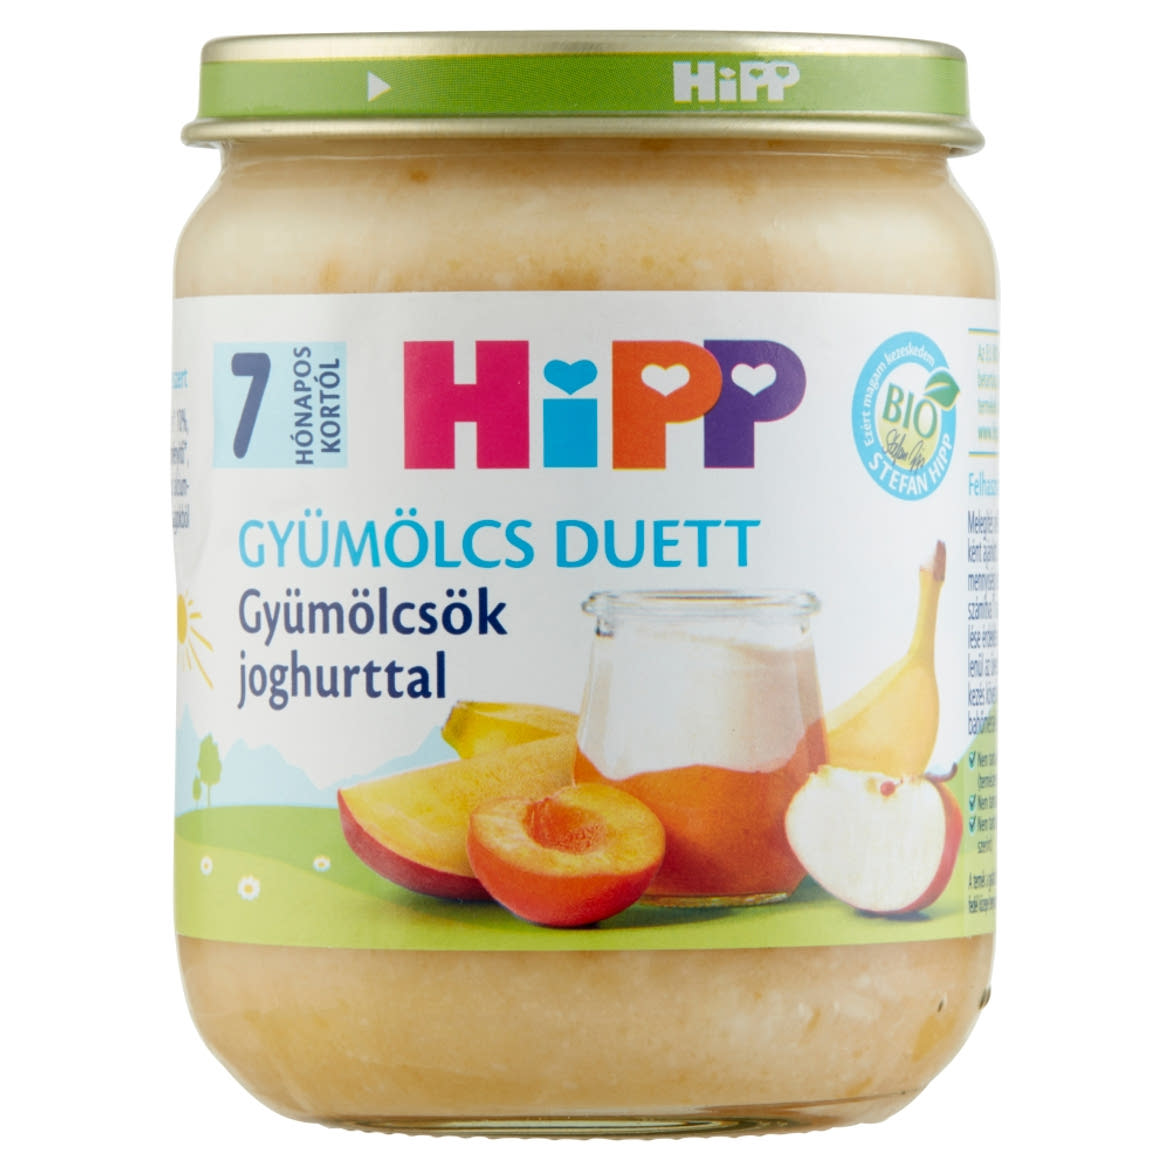 HiPP Gyümölcs Duett BIO gyümölcsök joghurttal bébidesszert 7 hónapos kortól